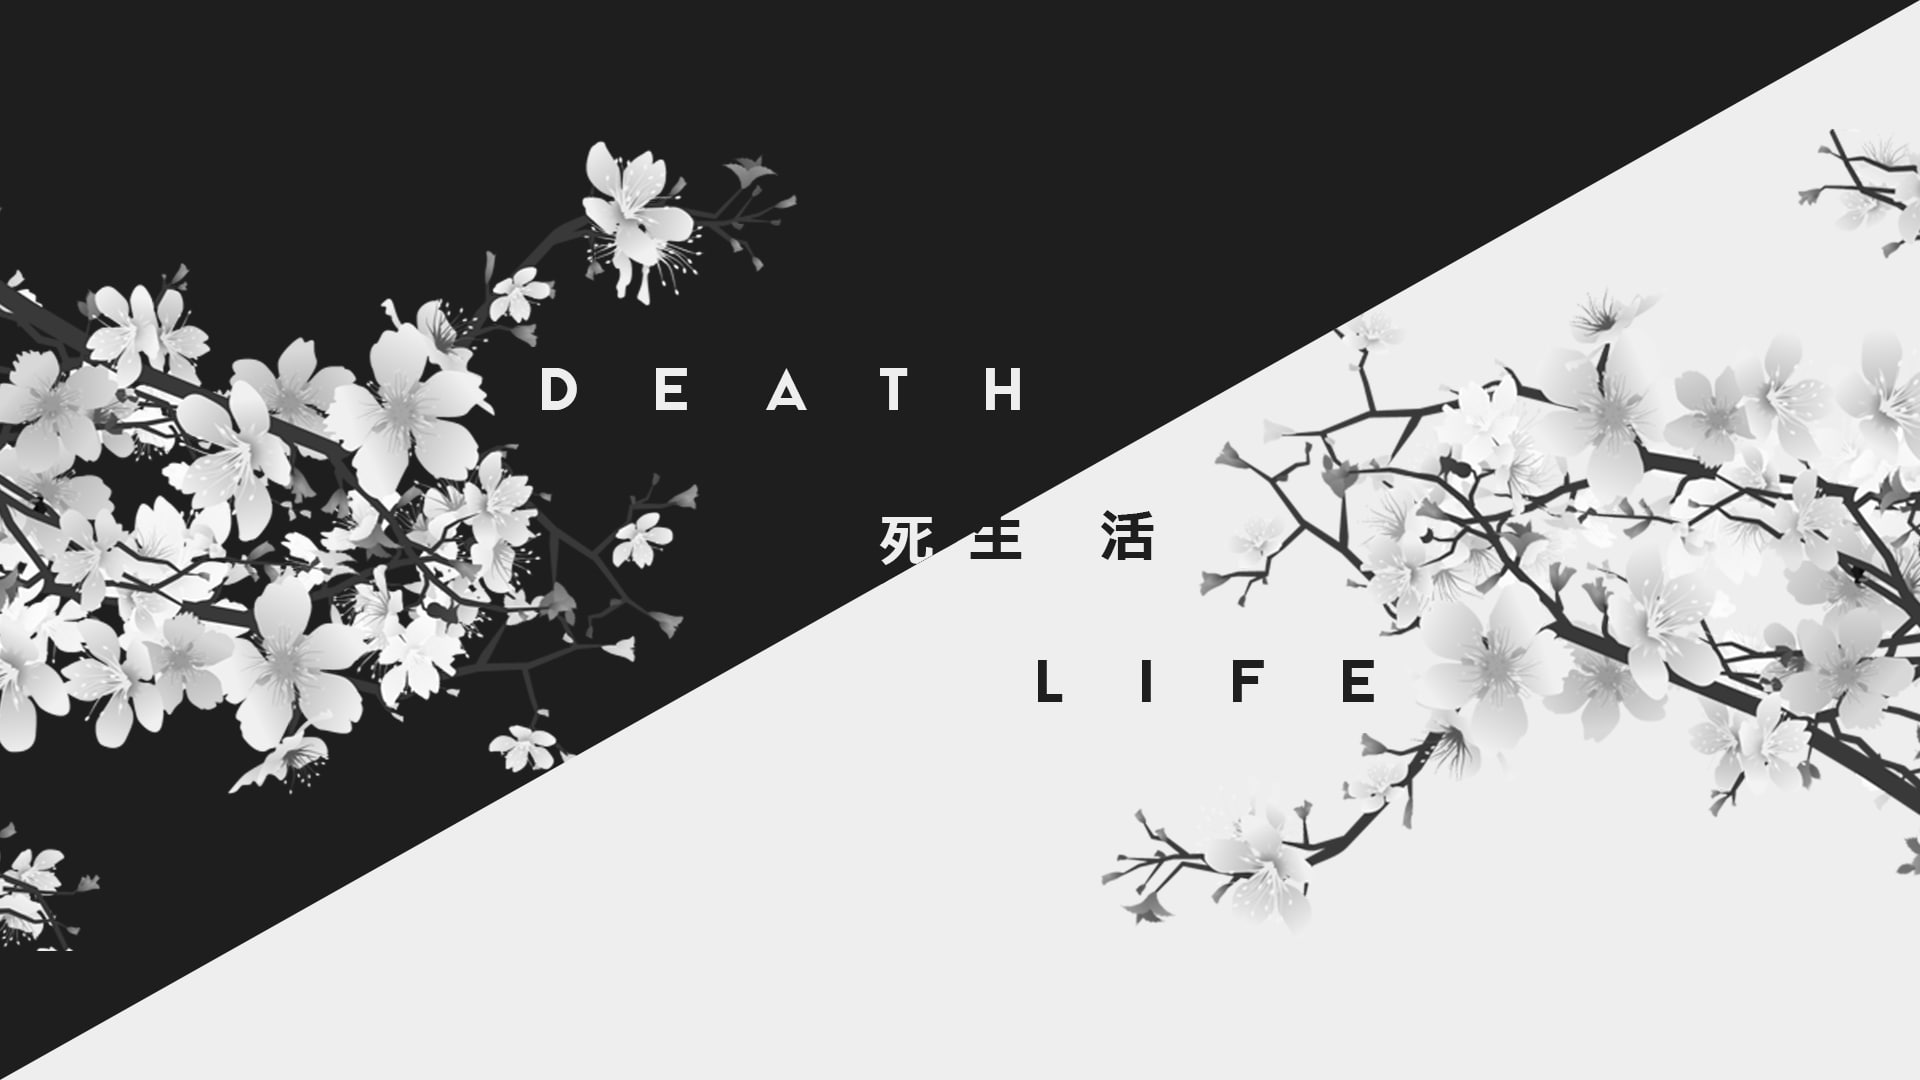 Dark, death, Japan, Kanji, life, white